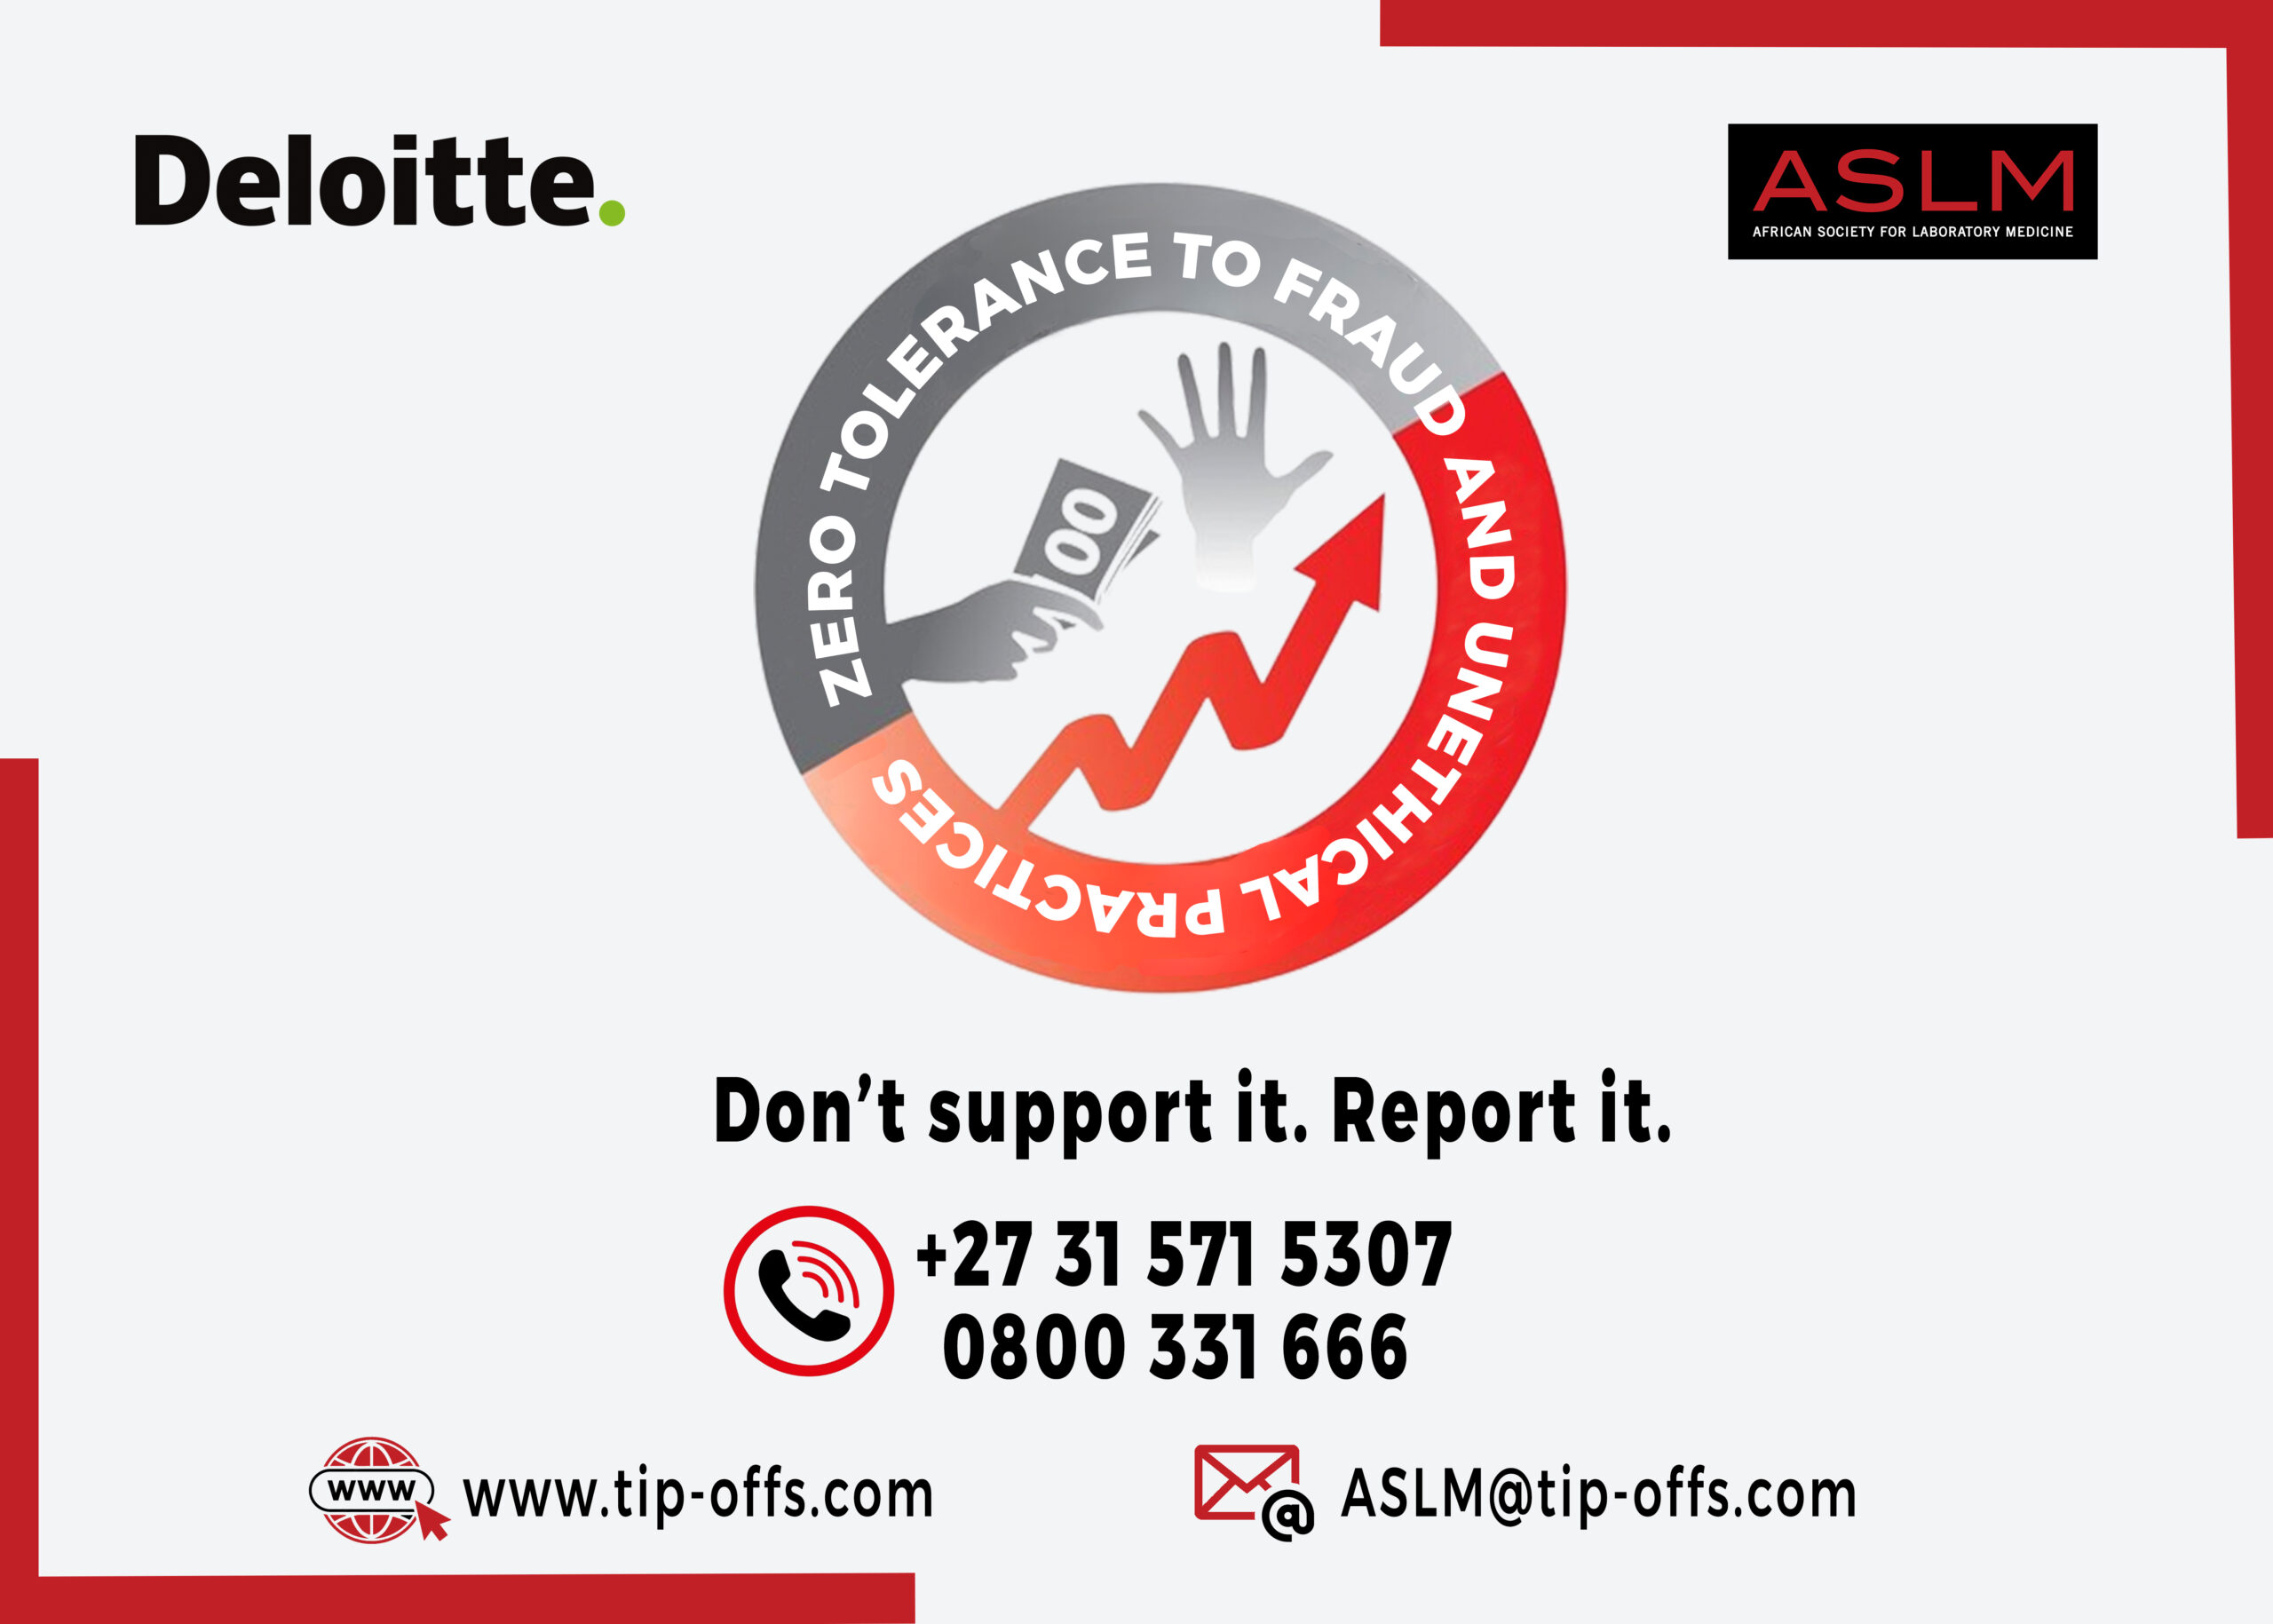 ASLM prend des mesures proactives contre la fraude et les pratiques contraires à l’éthique grâce aux dénonciations anonymes de Deloitte